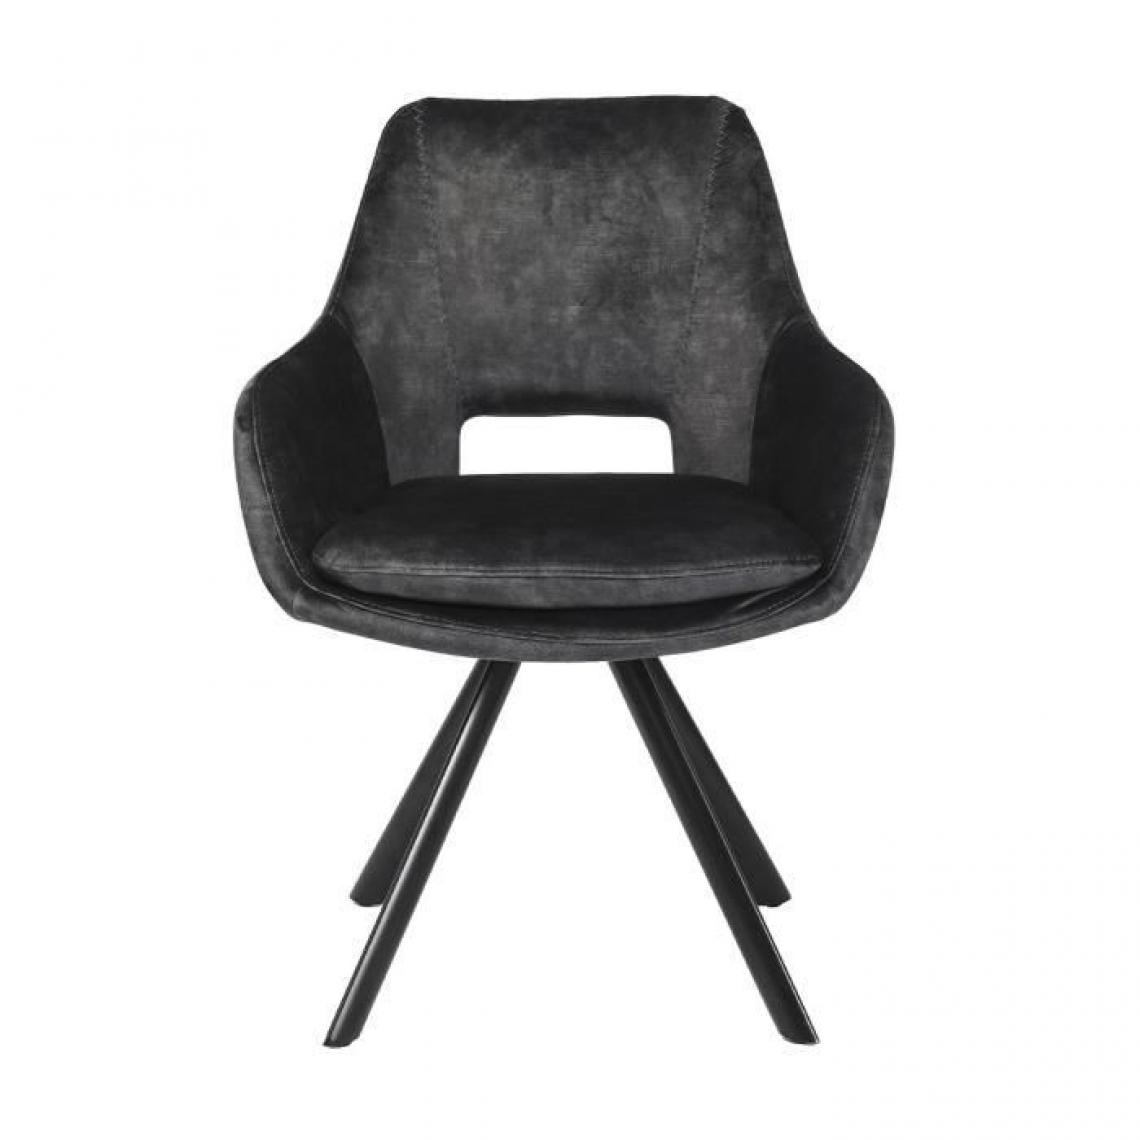 Cstore - Chaise de salle a manger - Velours gris foncé - L 59,5 x P 62 x H 81,5 cm - HANZEL - Chaises